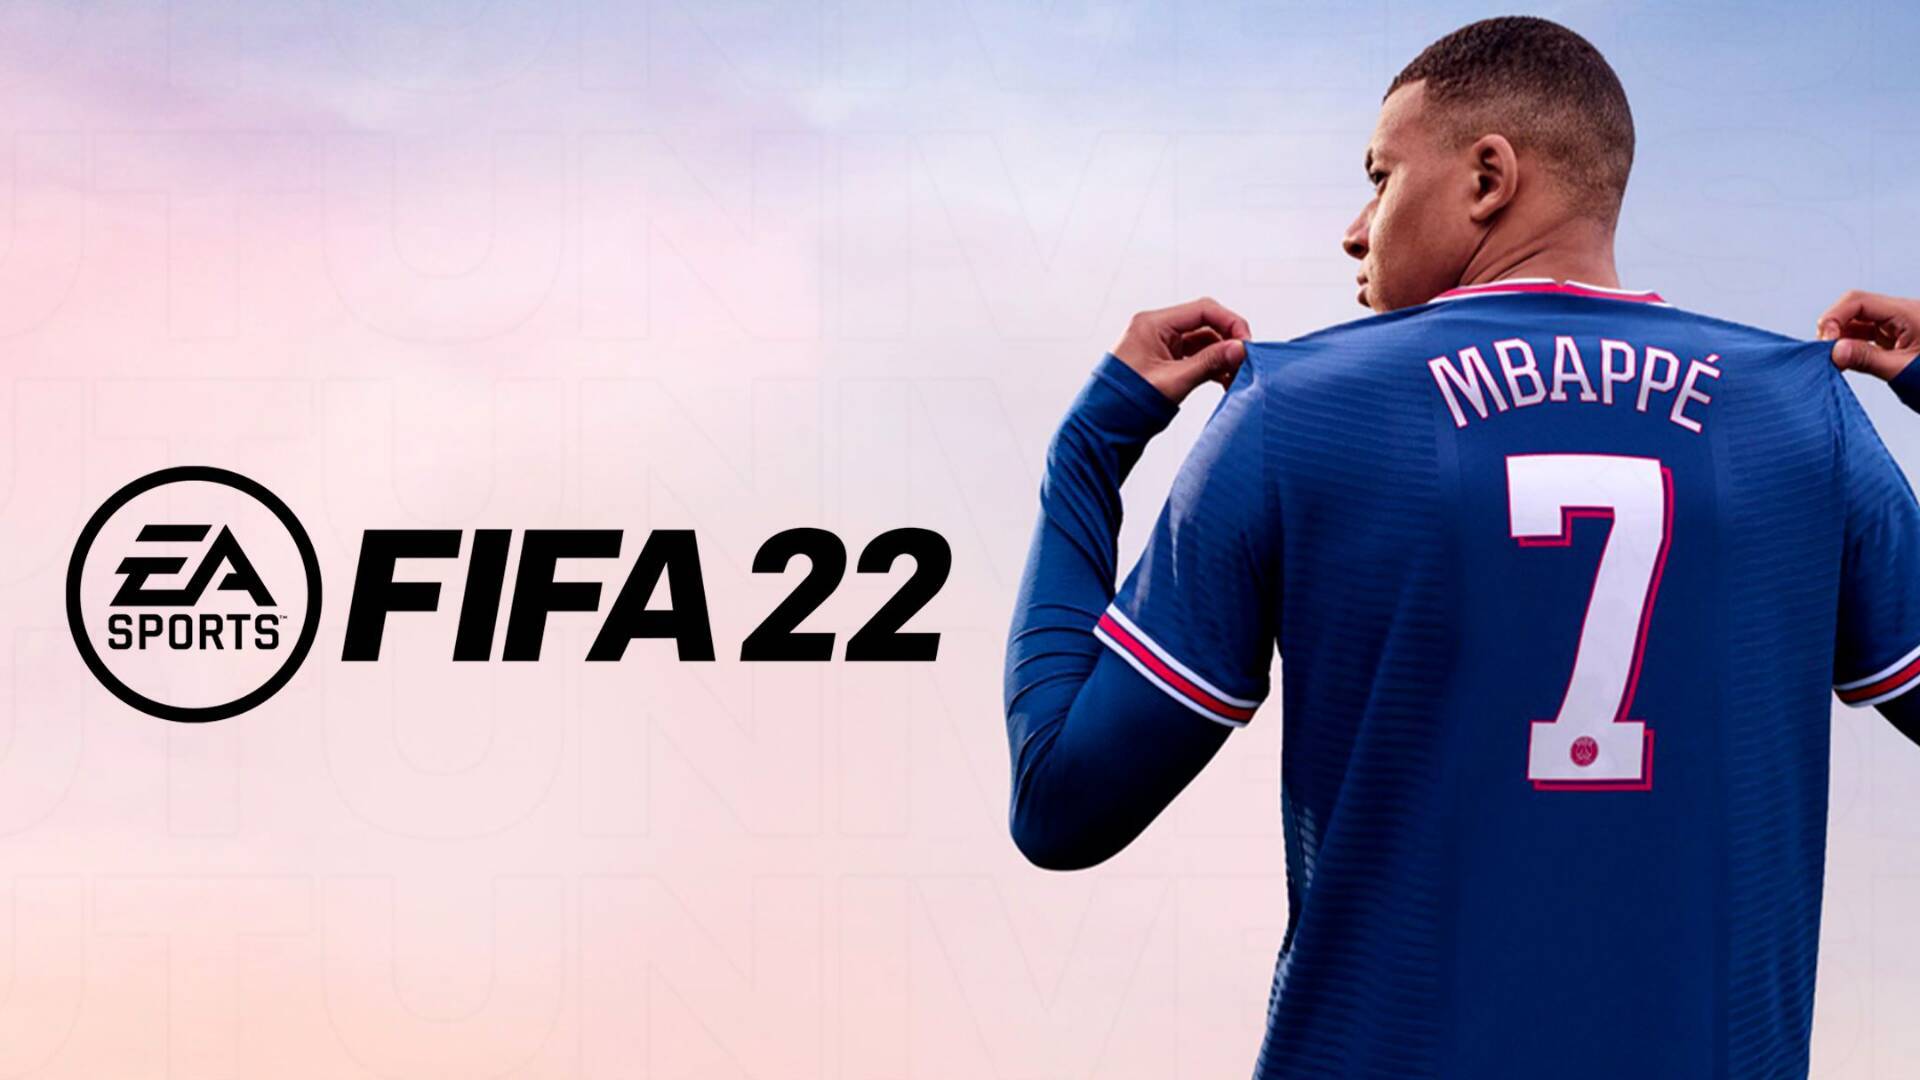 لعبة فيفا 22 للاندرويد الرسمية FIFA 2022 واهم المميزات ومتطلبات التشغيل